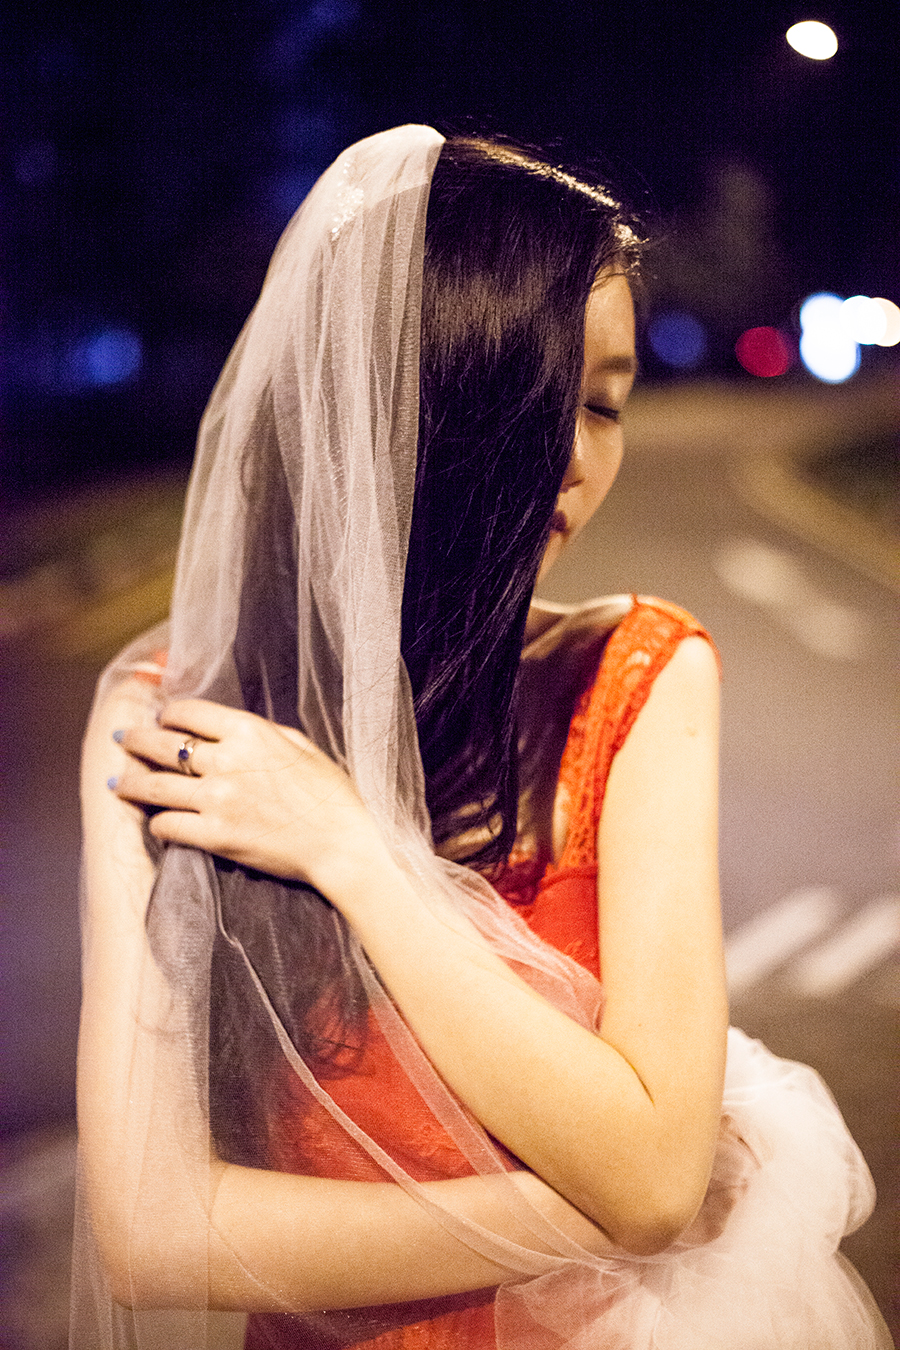 Banggood red lace gown and Banggood white long wedding veil.